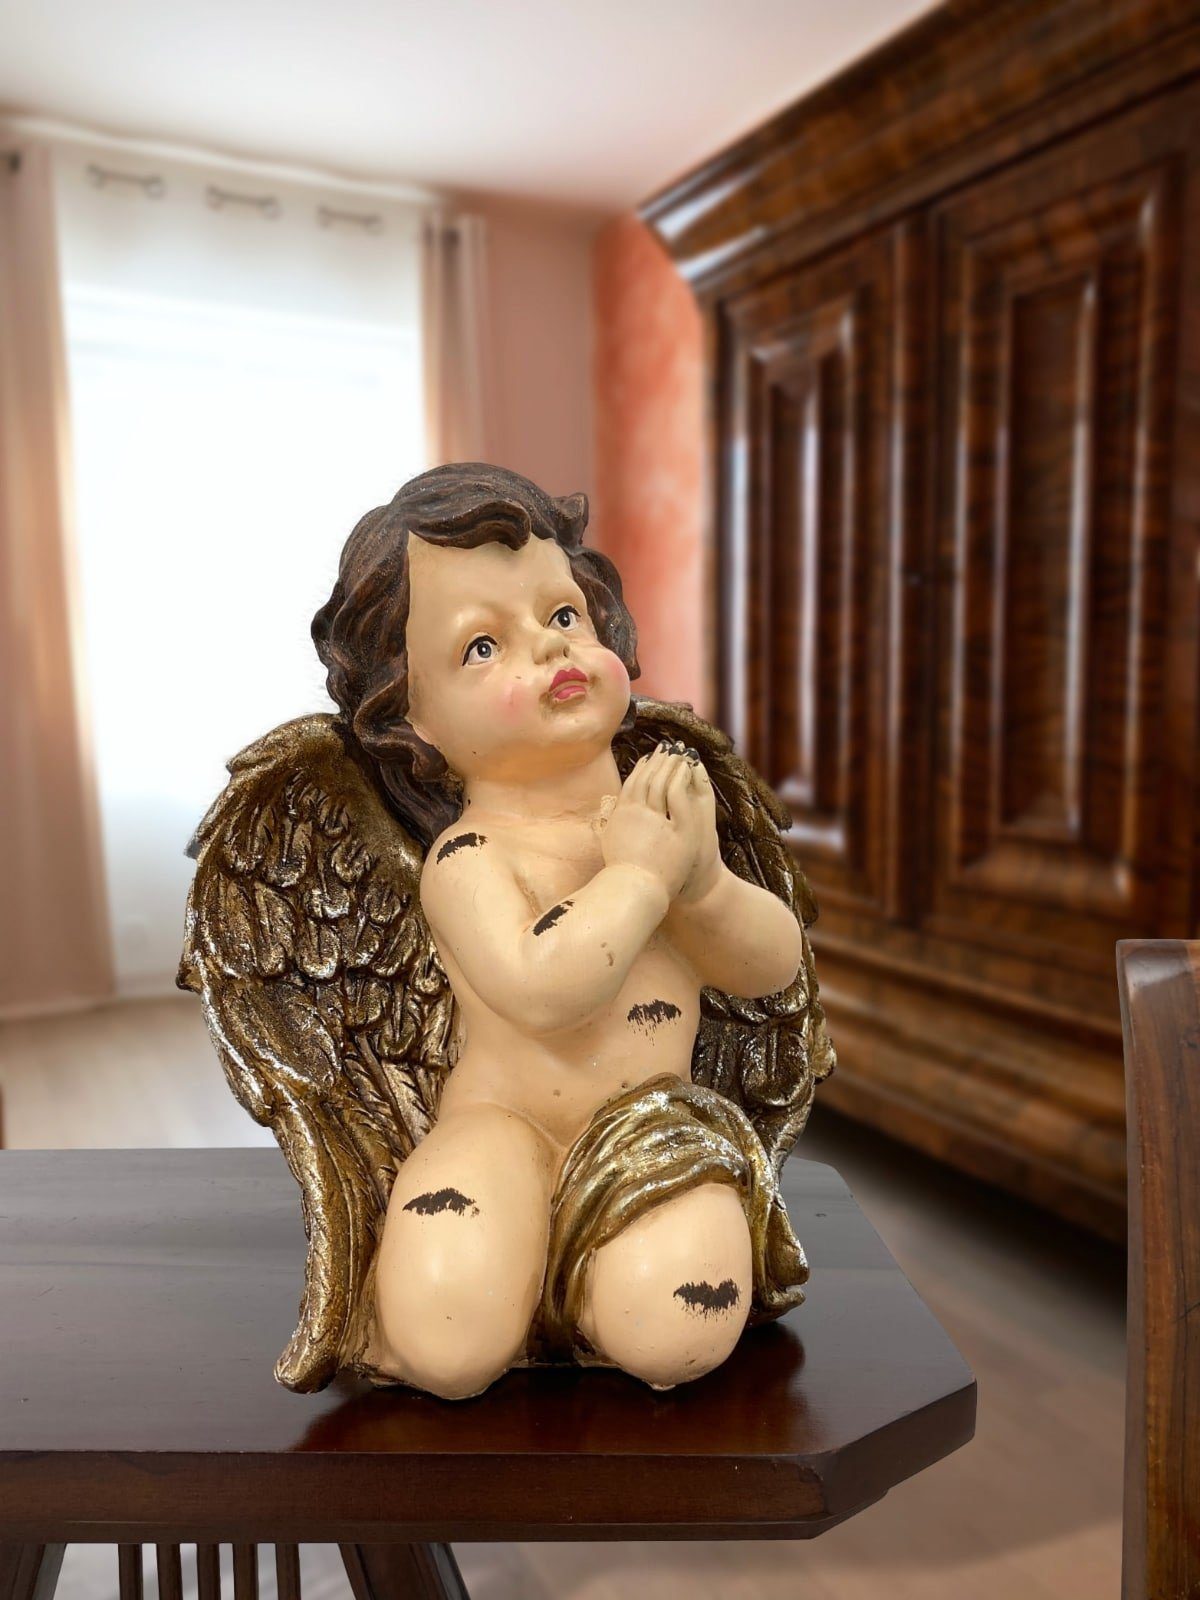 Aubaho Dekofigur Skulptur Engel Figur betender Antik-Stil Putte 26cm Kunststein Putti